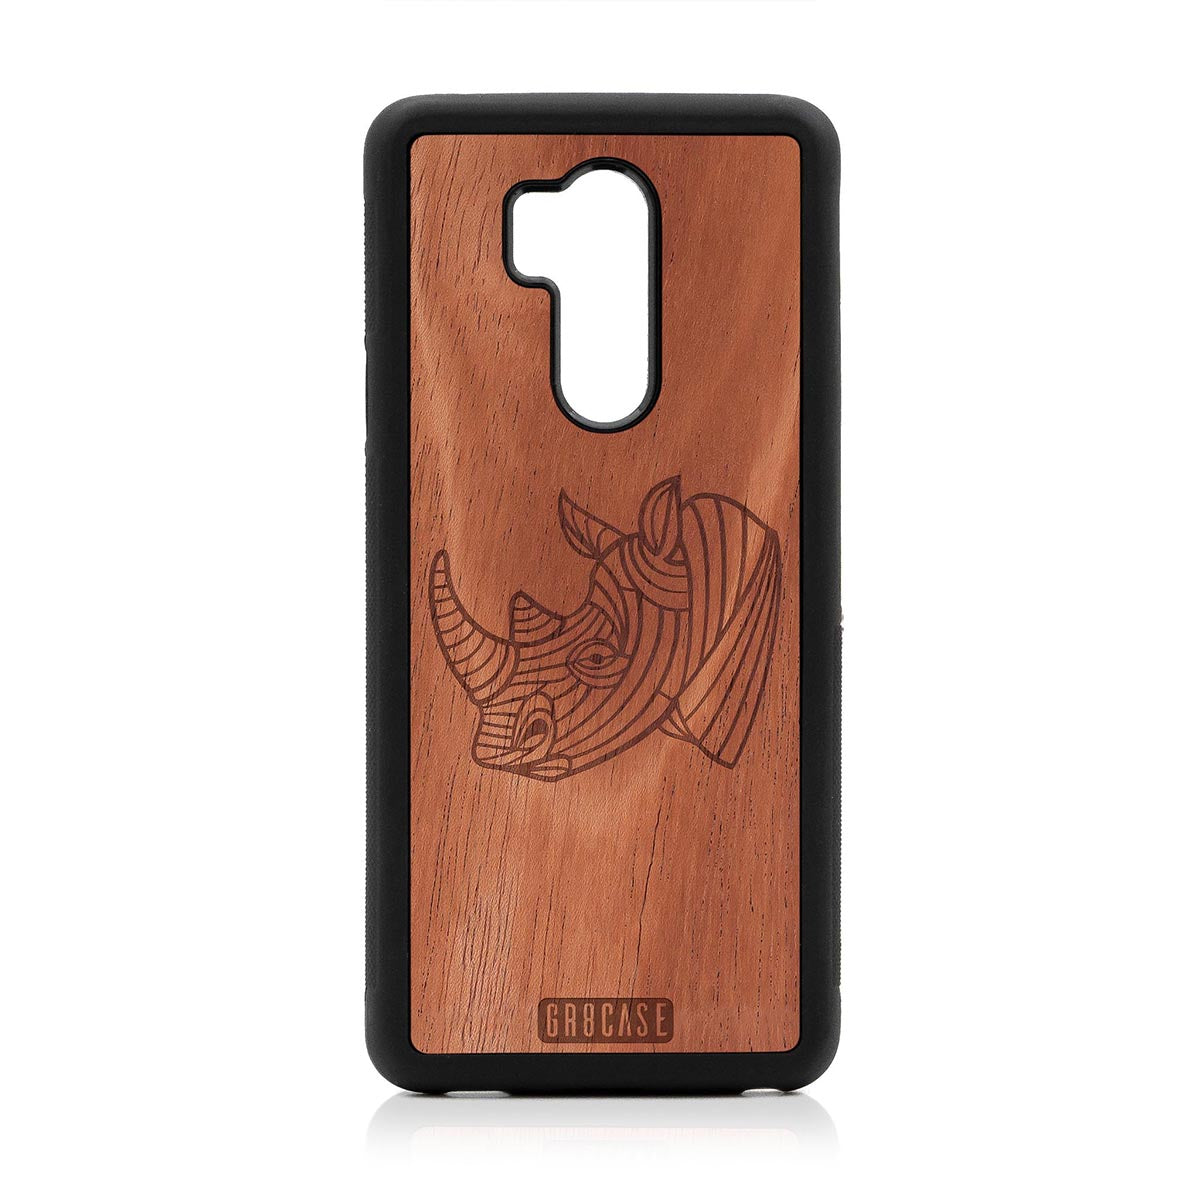 Rhino Design Wood Case LG G7 ThinQ by GR8CASE